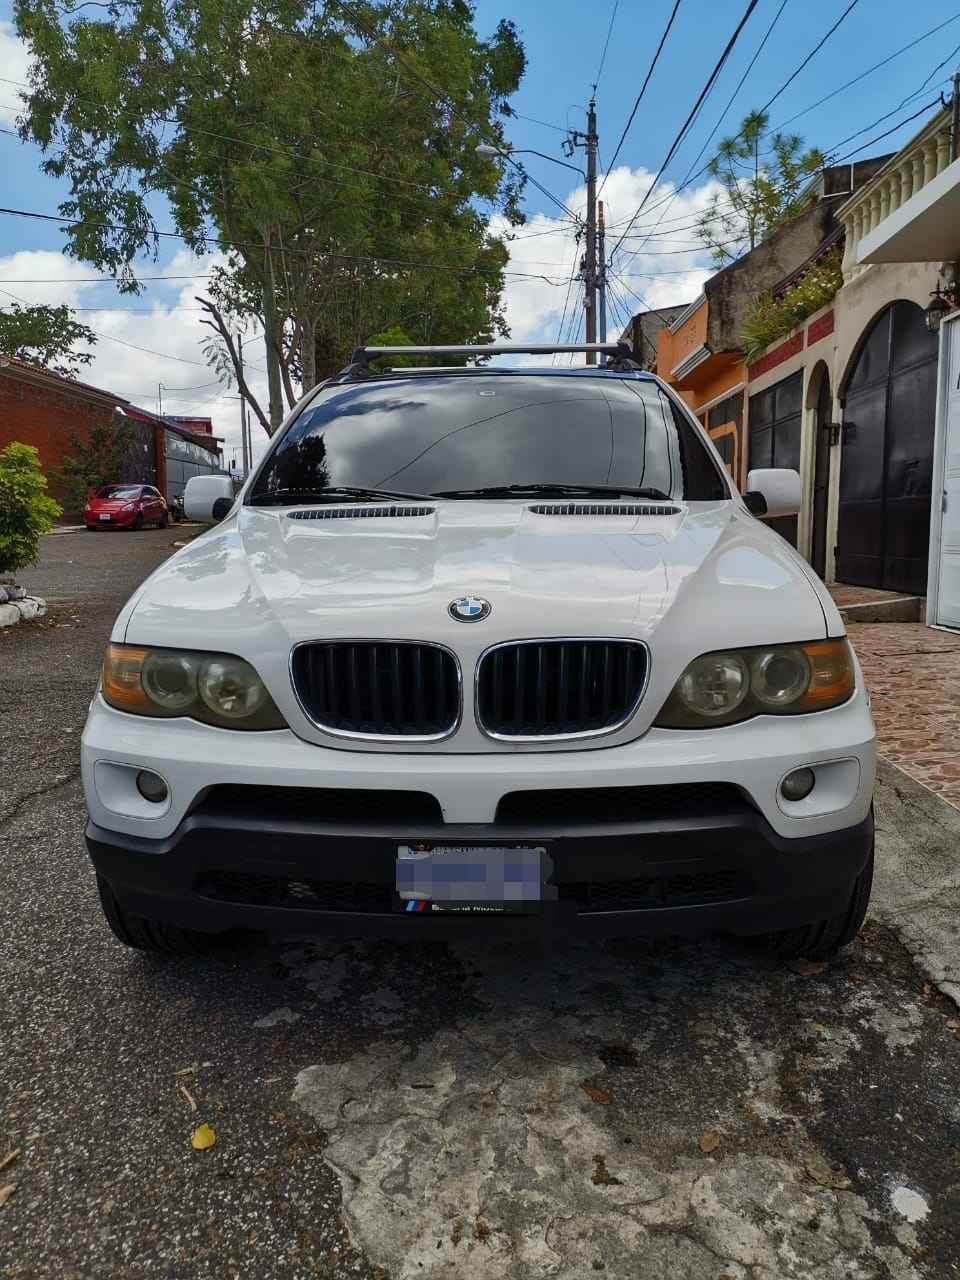 Camioneta BMW x5